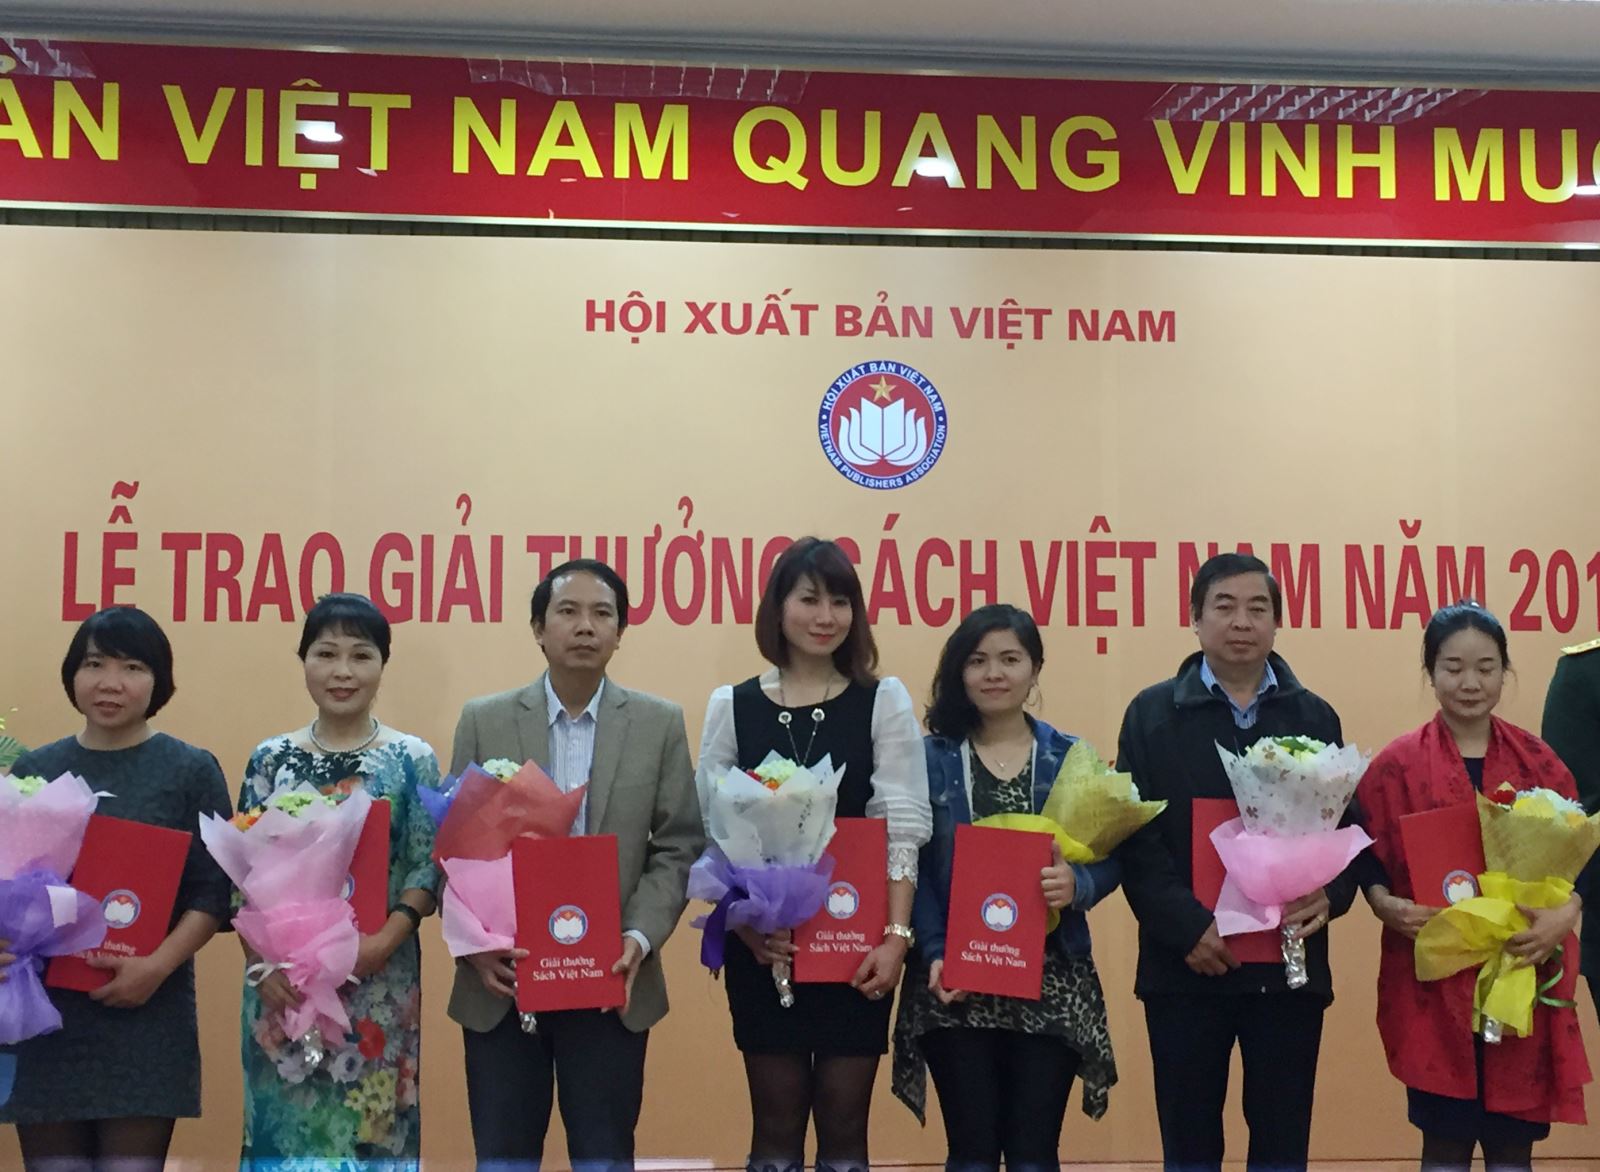 Nhà xuất bản Giáo dục Việt Nam nhận giải tại Lễ trao giải thưởng Sách Việt Nam năm 2016